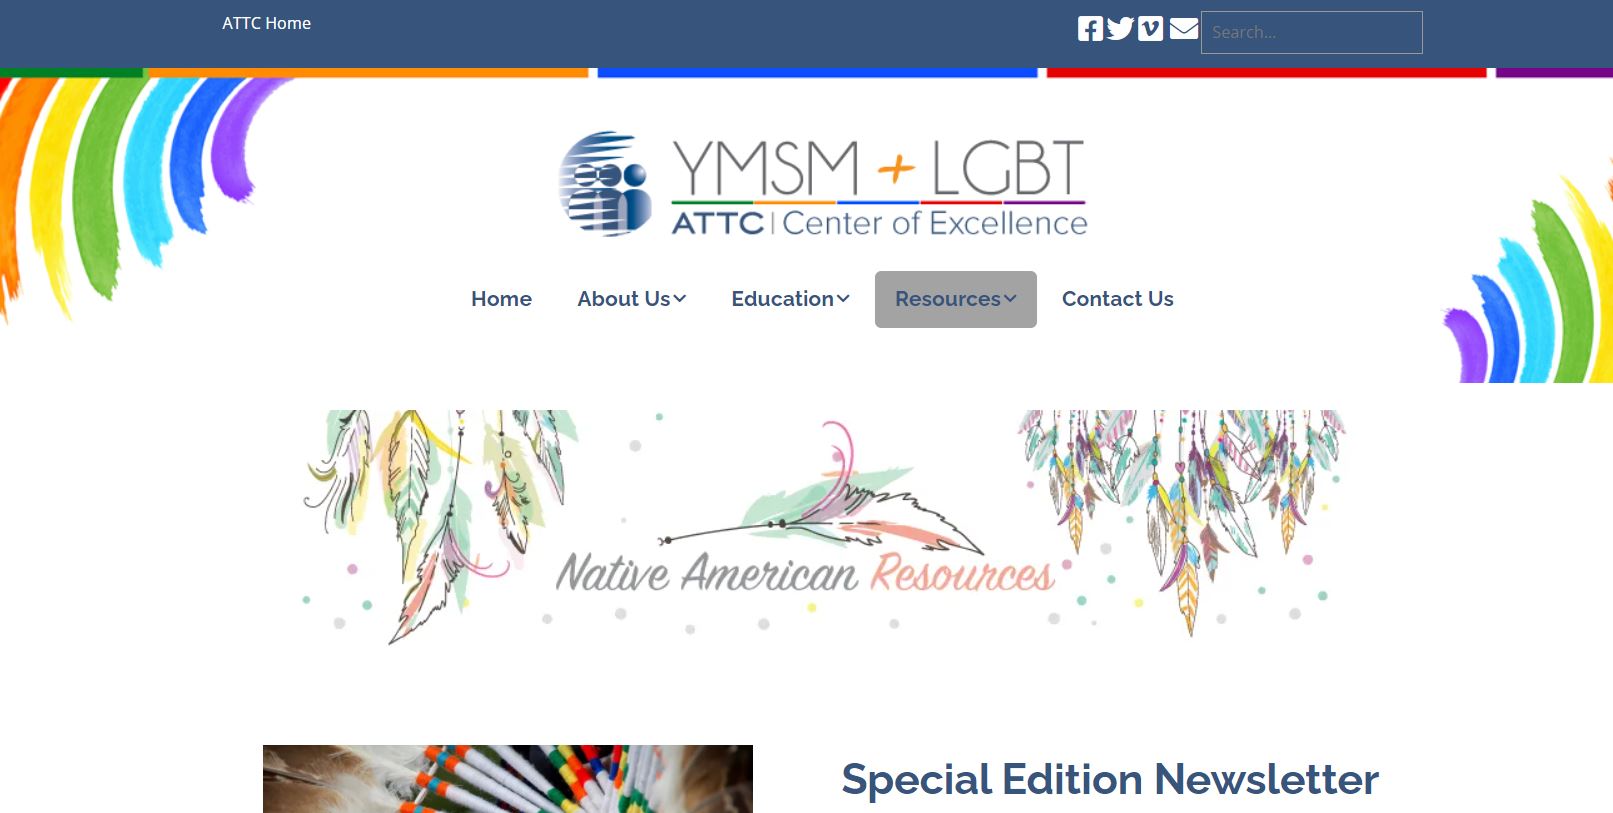 2-YMSM+LGBTQ